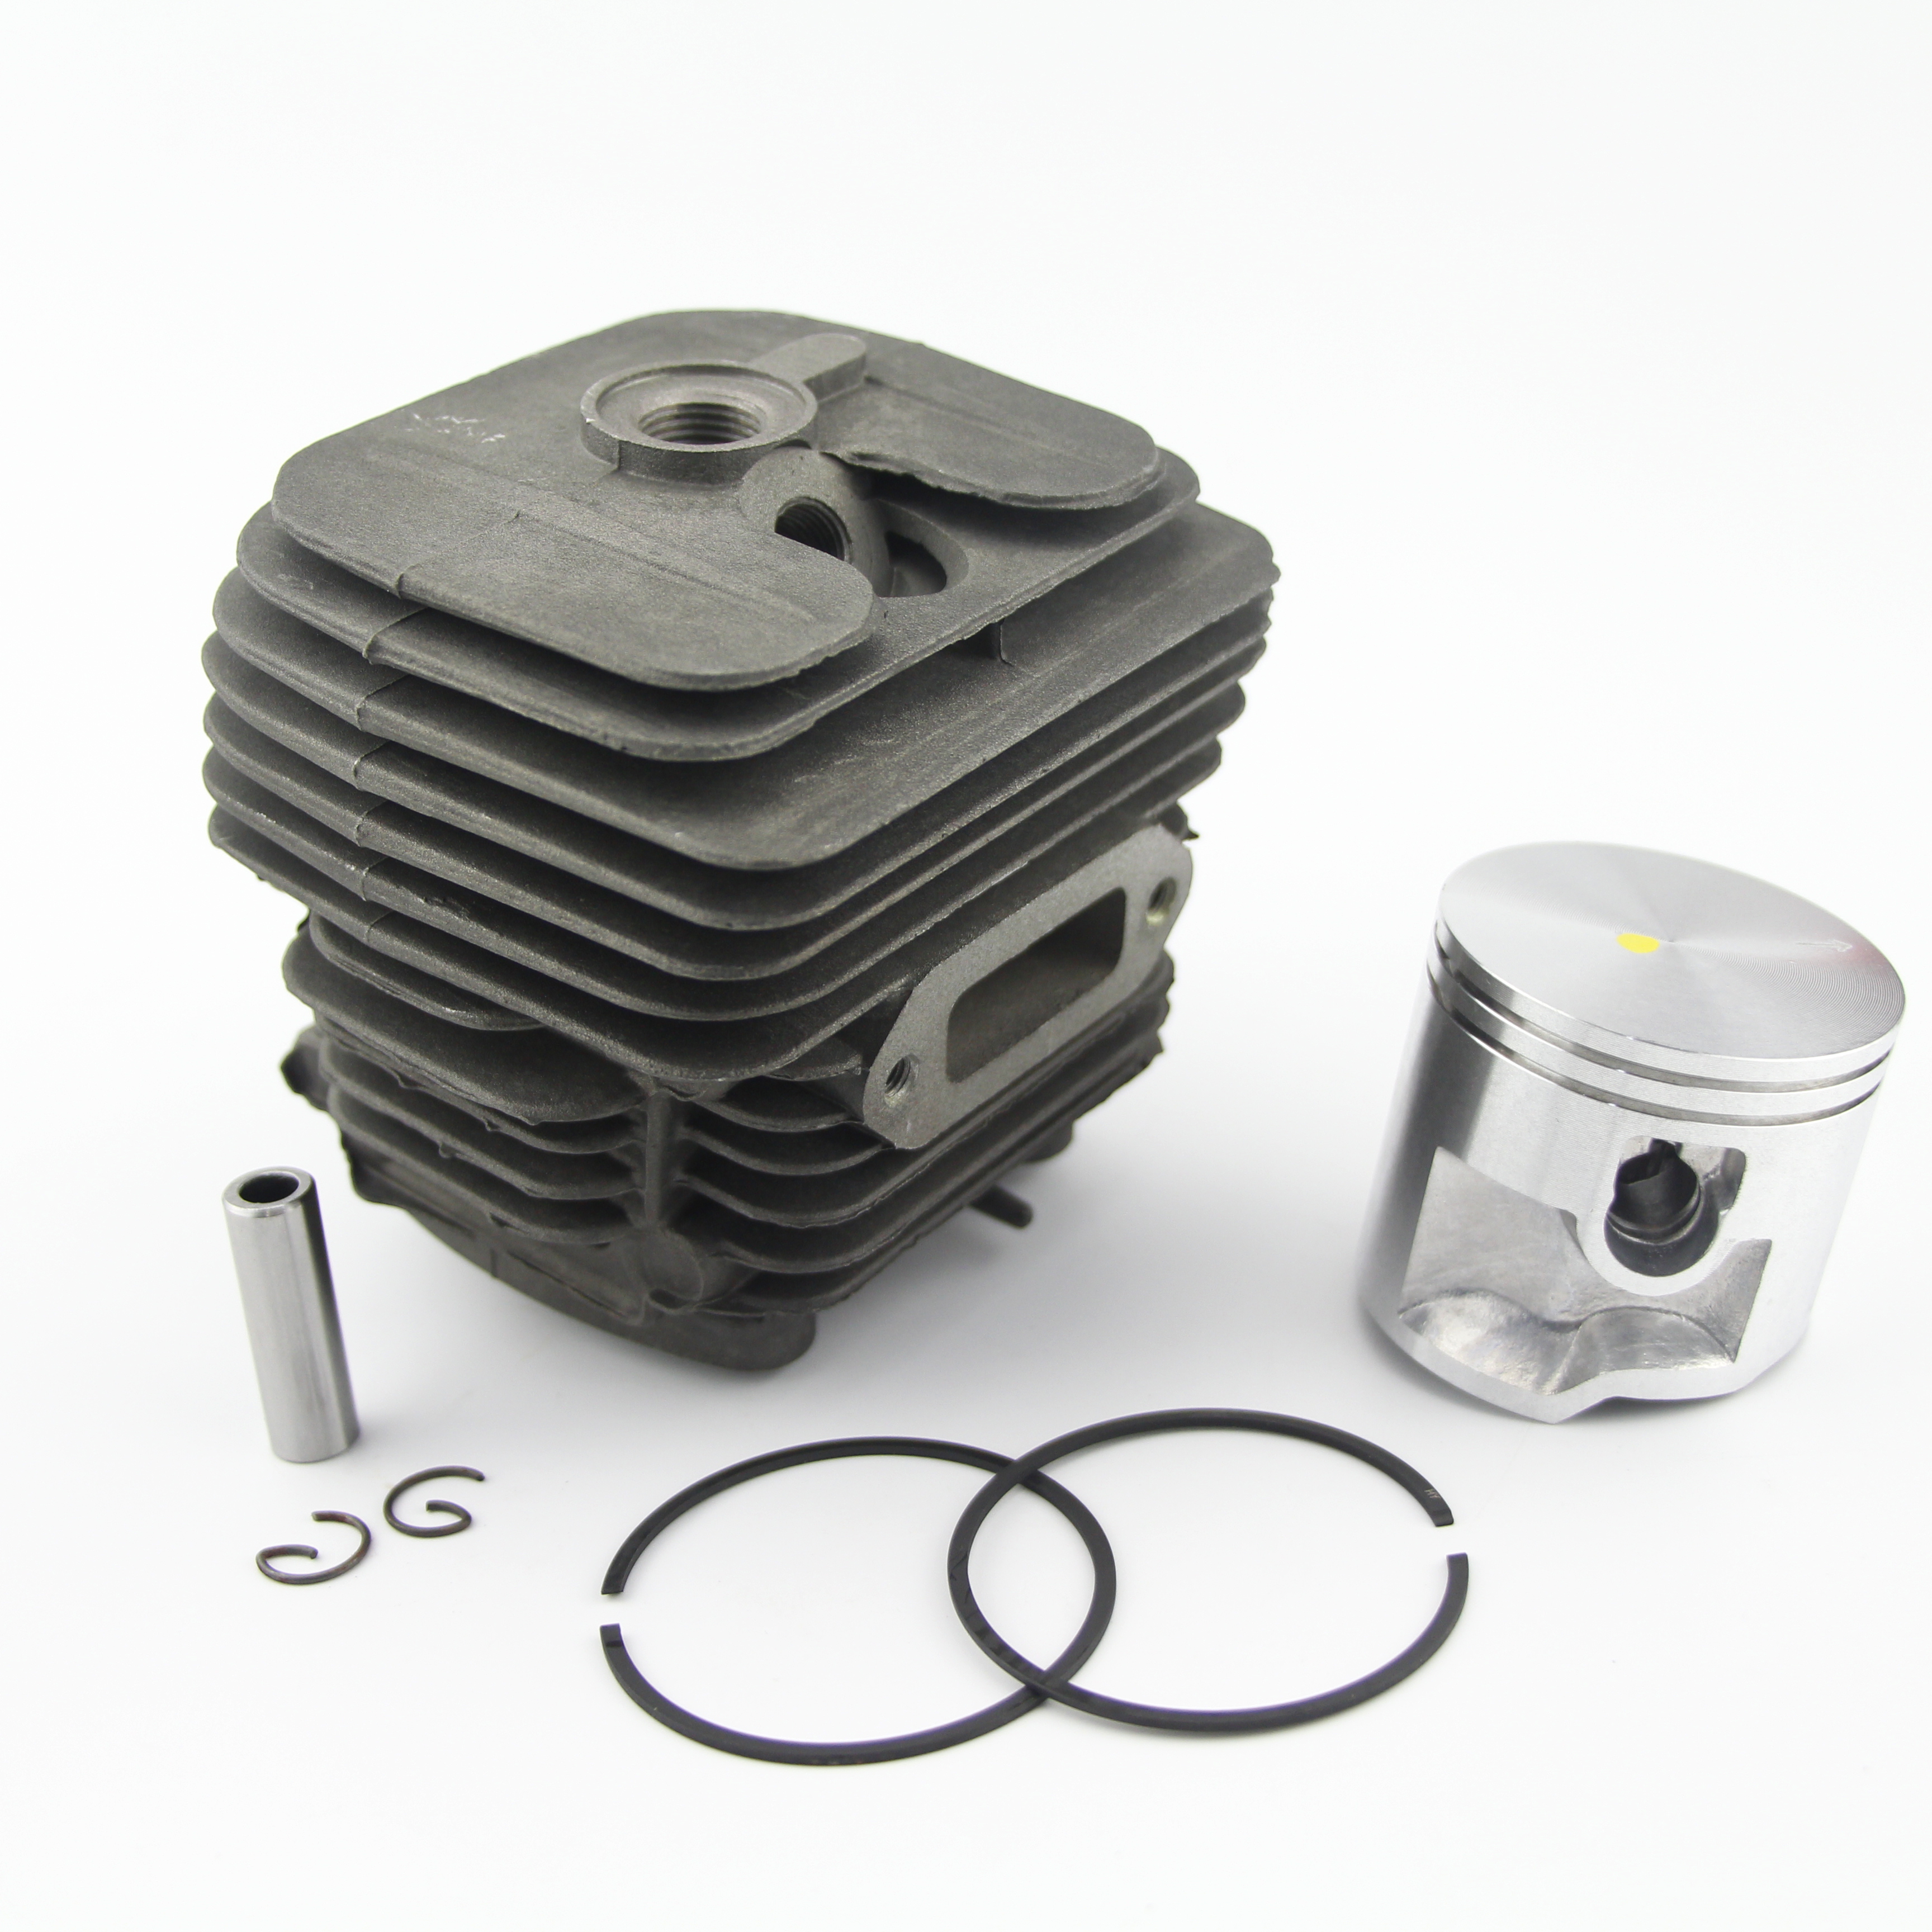 7pcs Piston Cylinder Rebuild Parts Set Kit For Stihl TS410 TS420 4238 020 1202 